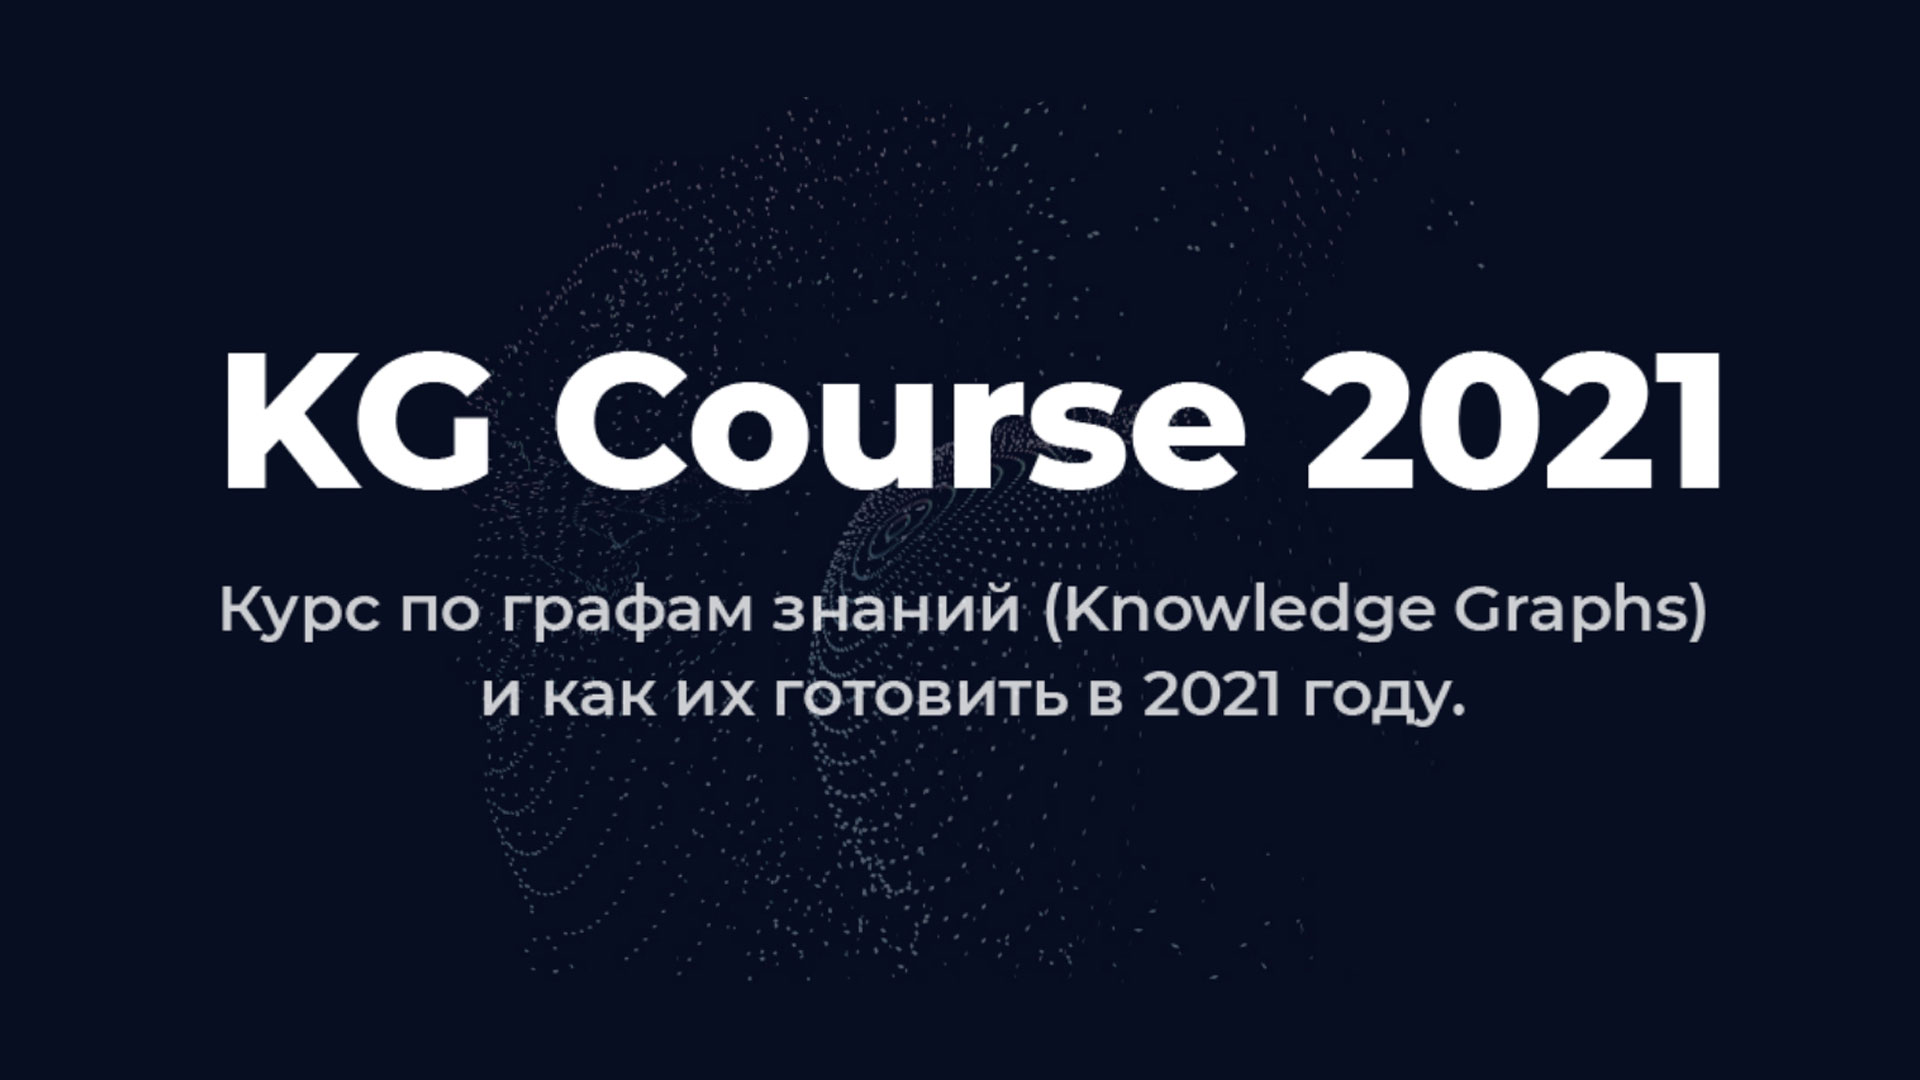 KG Course 2021